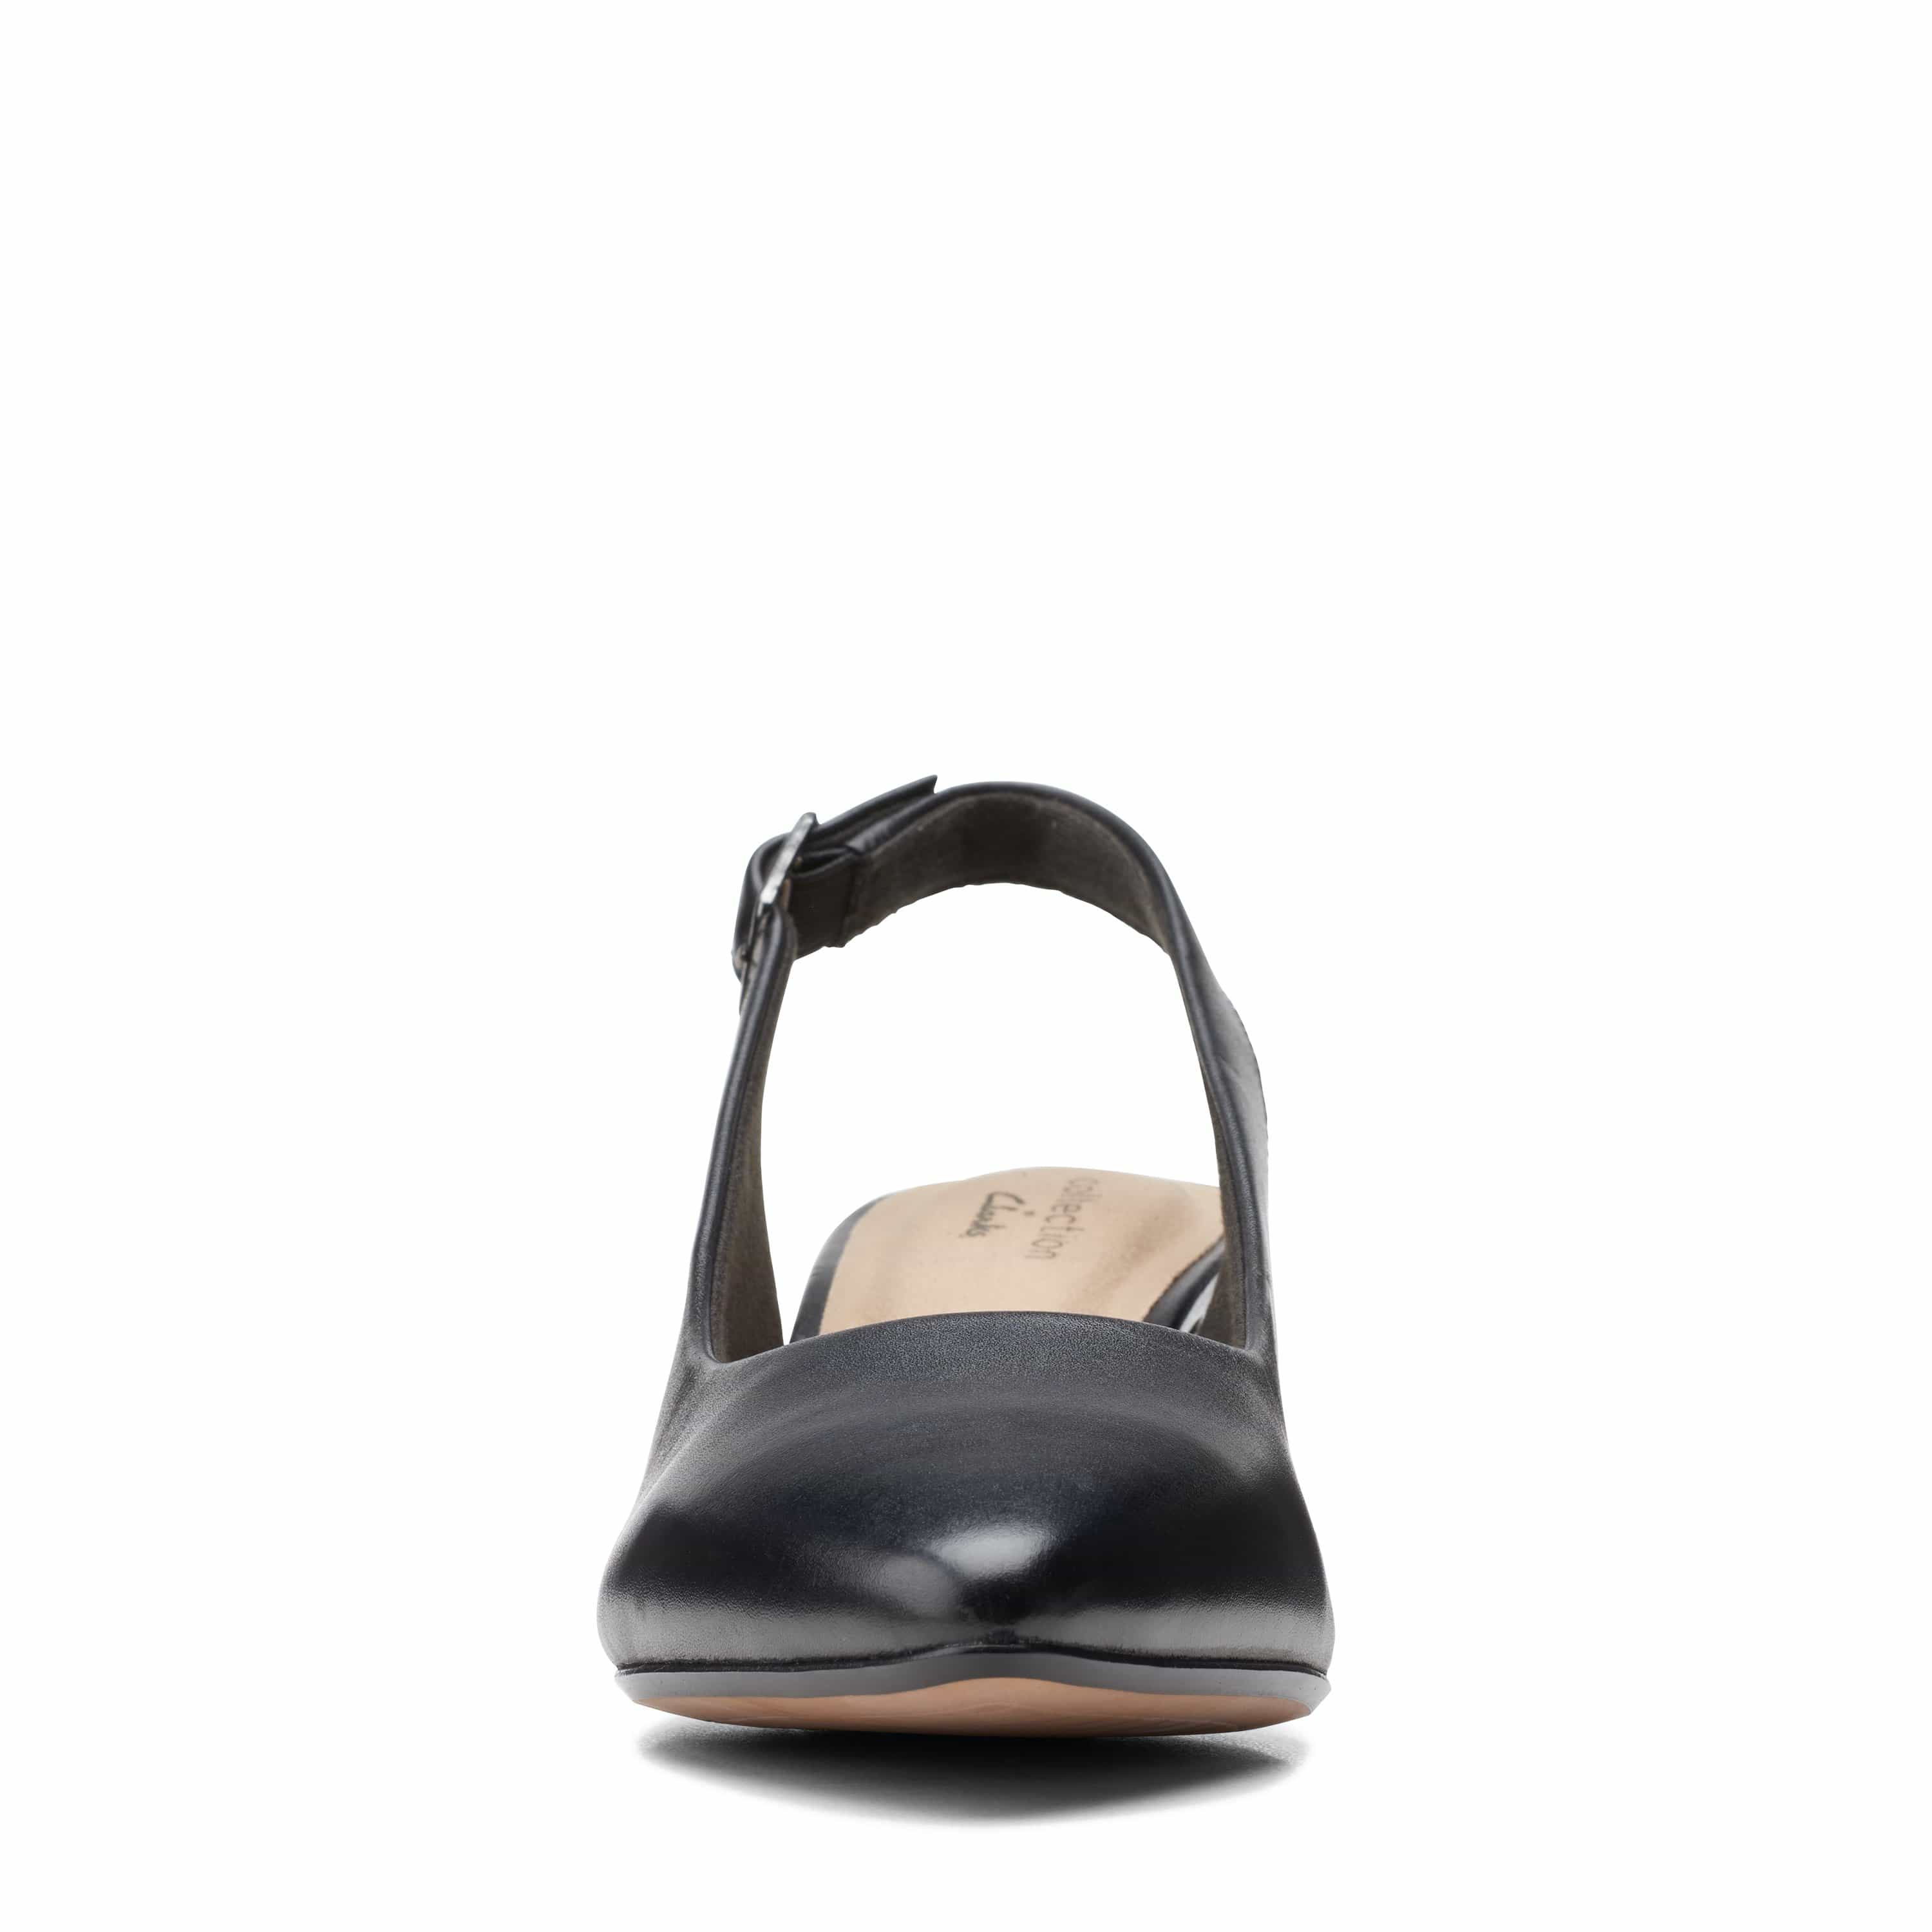 Clarks Linvale Sondra - Shoes - Black Leather - 261532304 - D Width (Standard Fit)